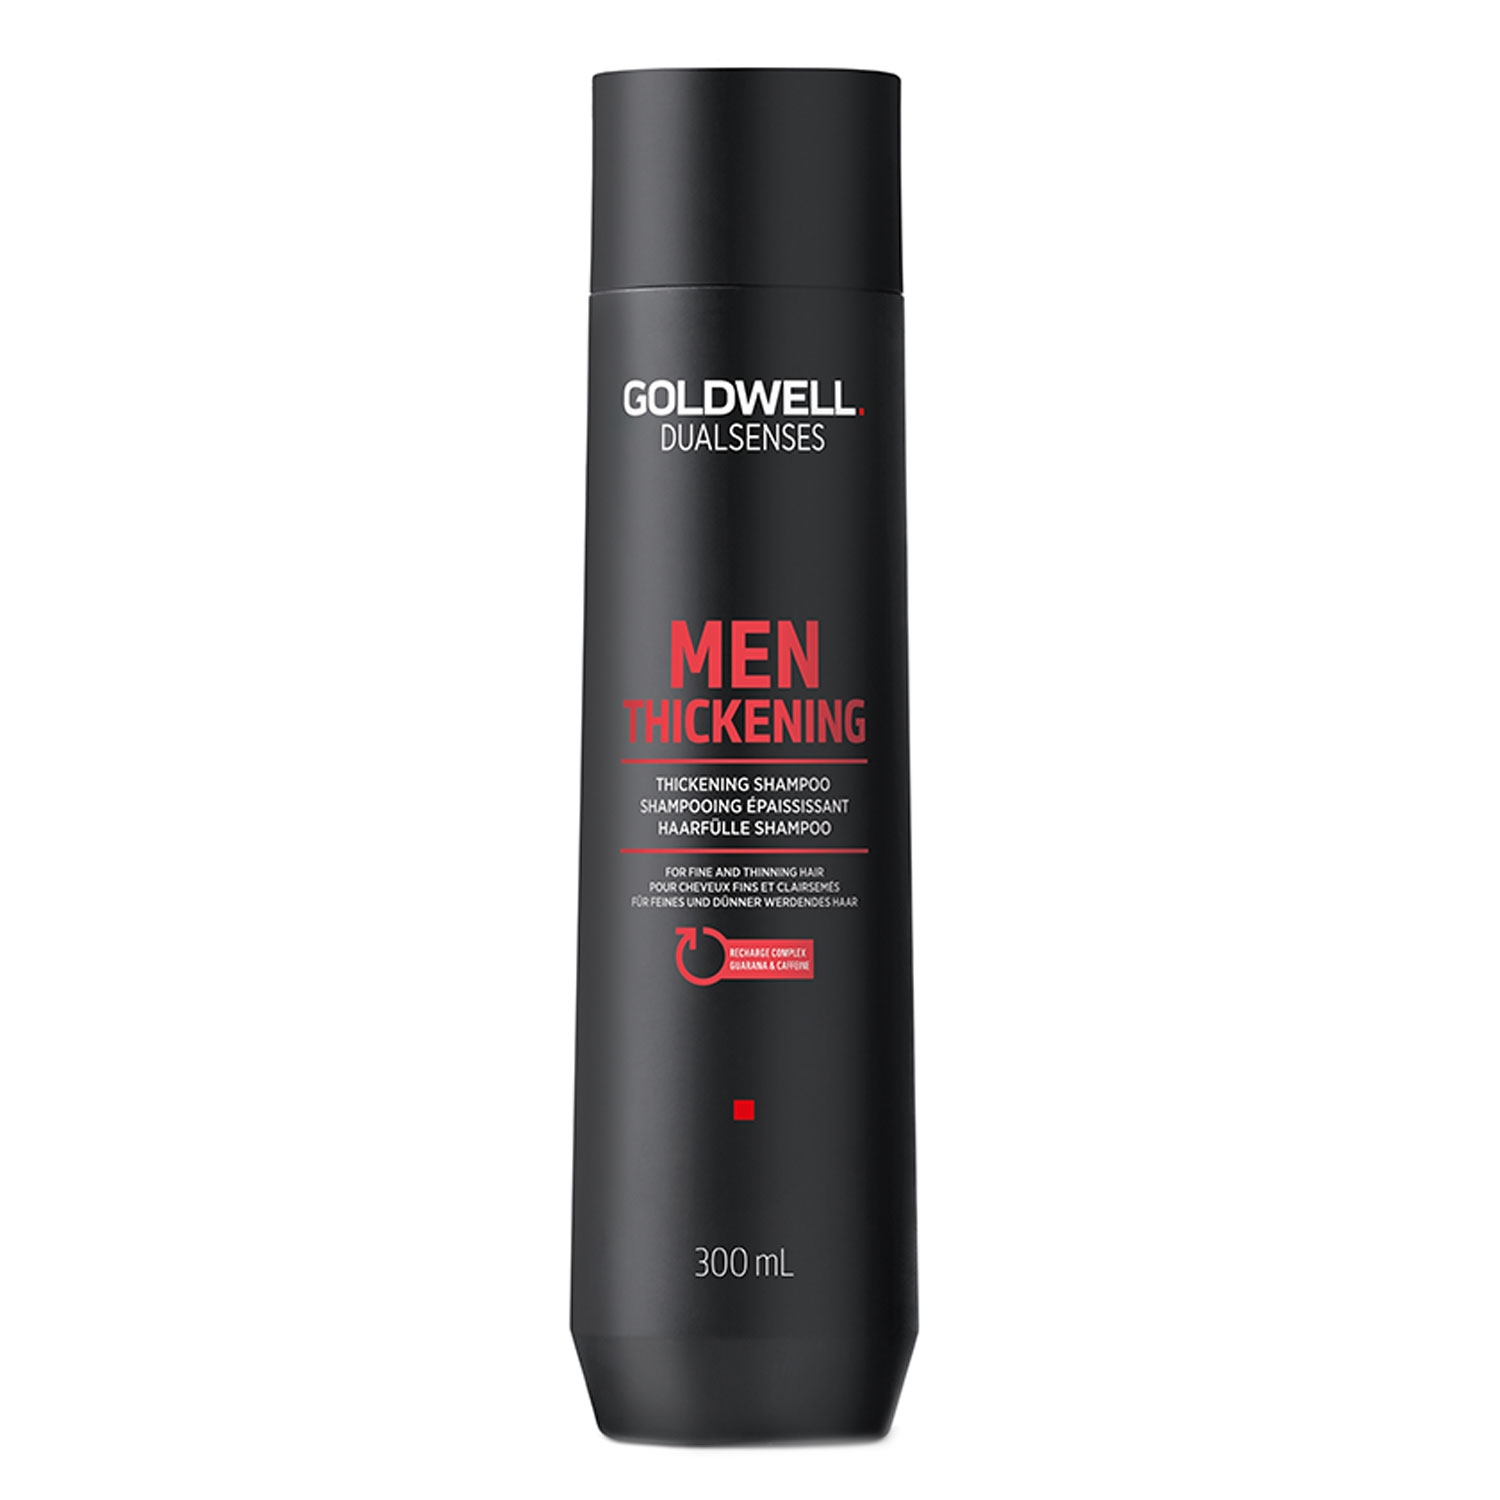 Produktbild von Dualsenses For Men - Thickening Shampoo